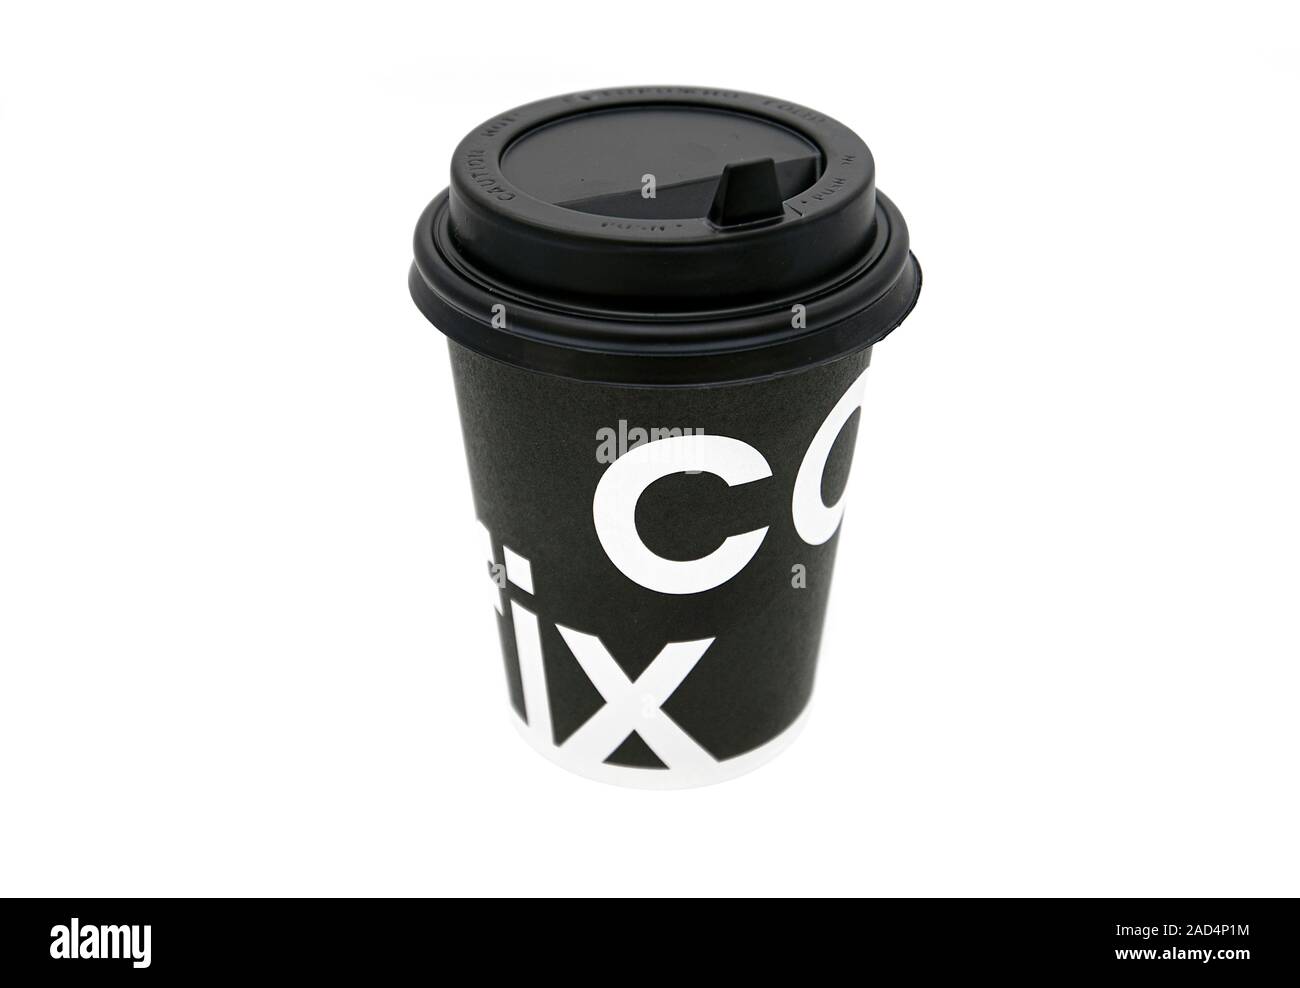 Tel AVIV - 27 NOVEMBRE: Coppa nera con logo COFIX isolata su sfondo bianco. Si tratta di una caffetteria israeliana, bar e catena di supermercati fondata nel 2013 Foto Stock